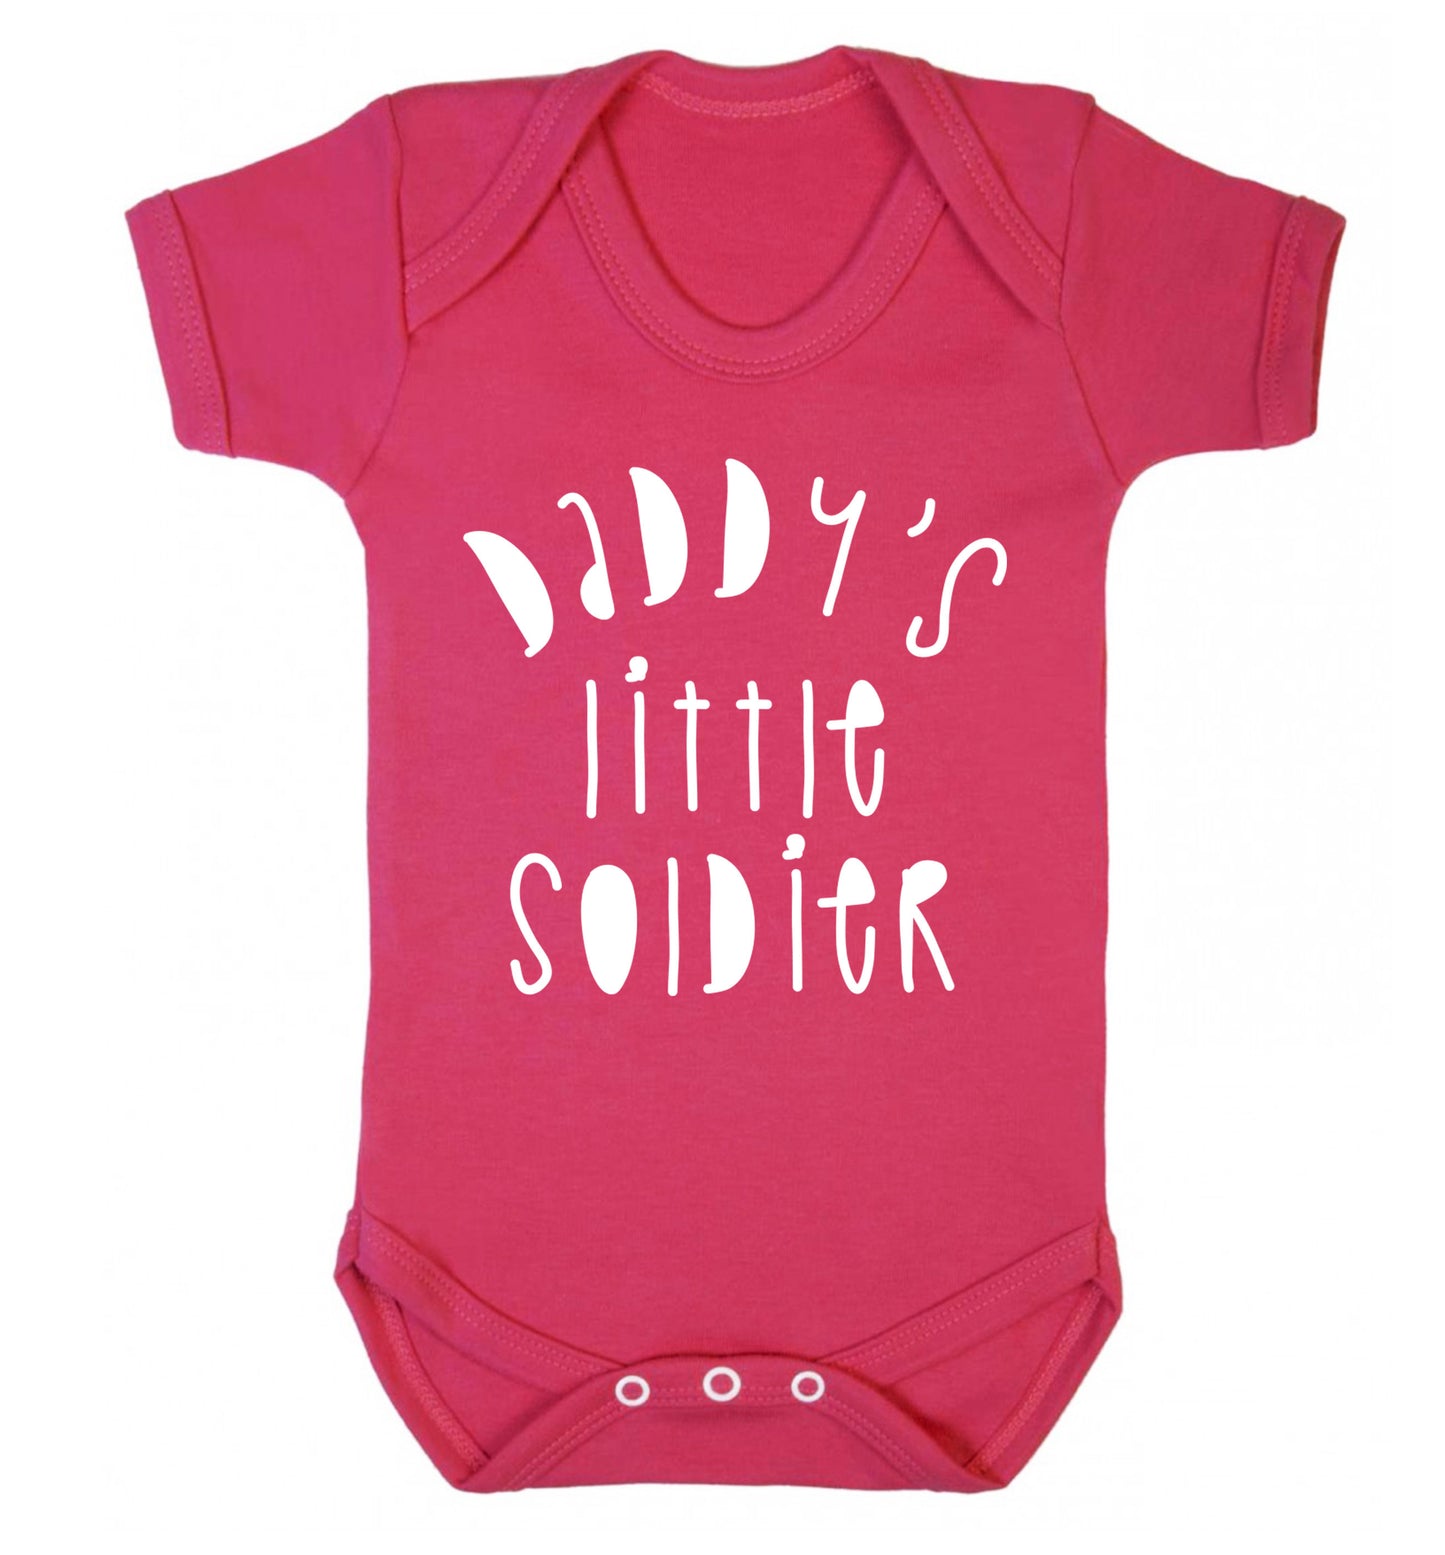 Daddy's little soldier Baby Vest dark pink 18-24 months